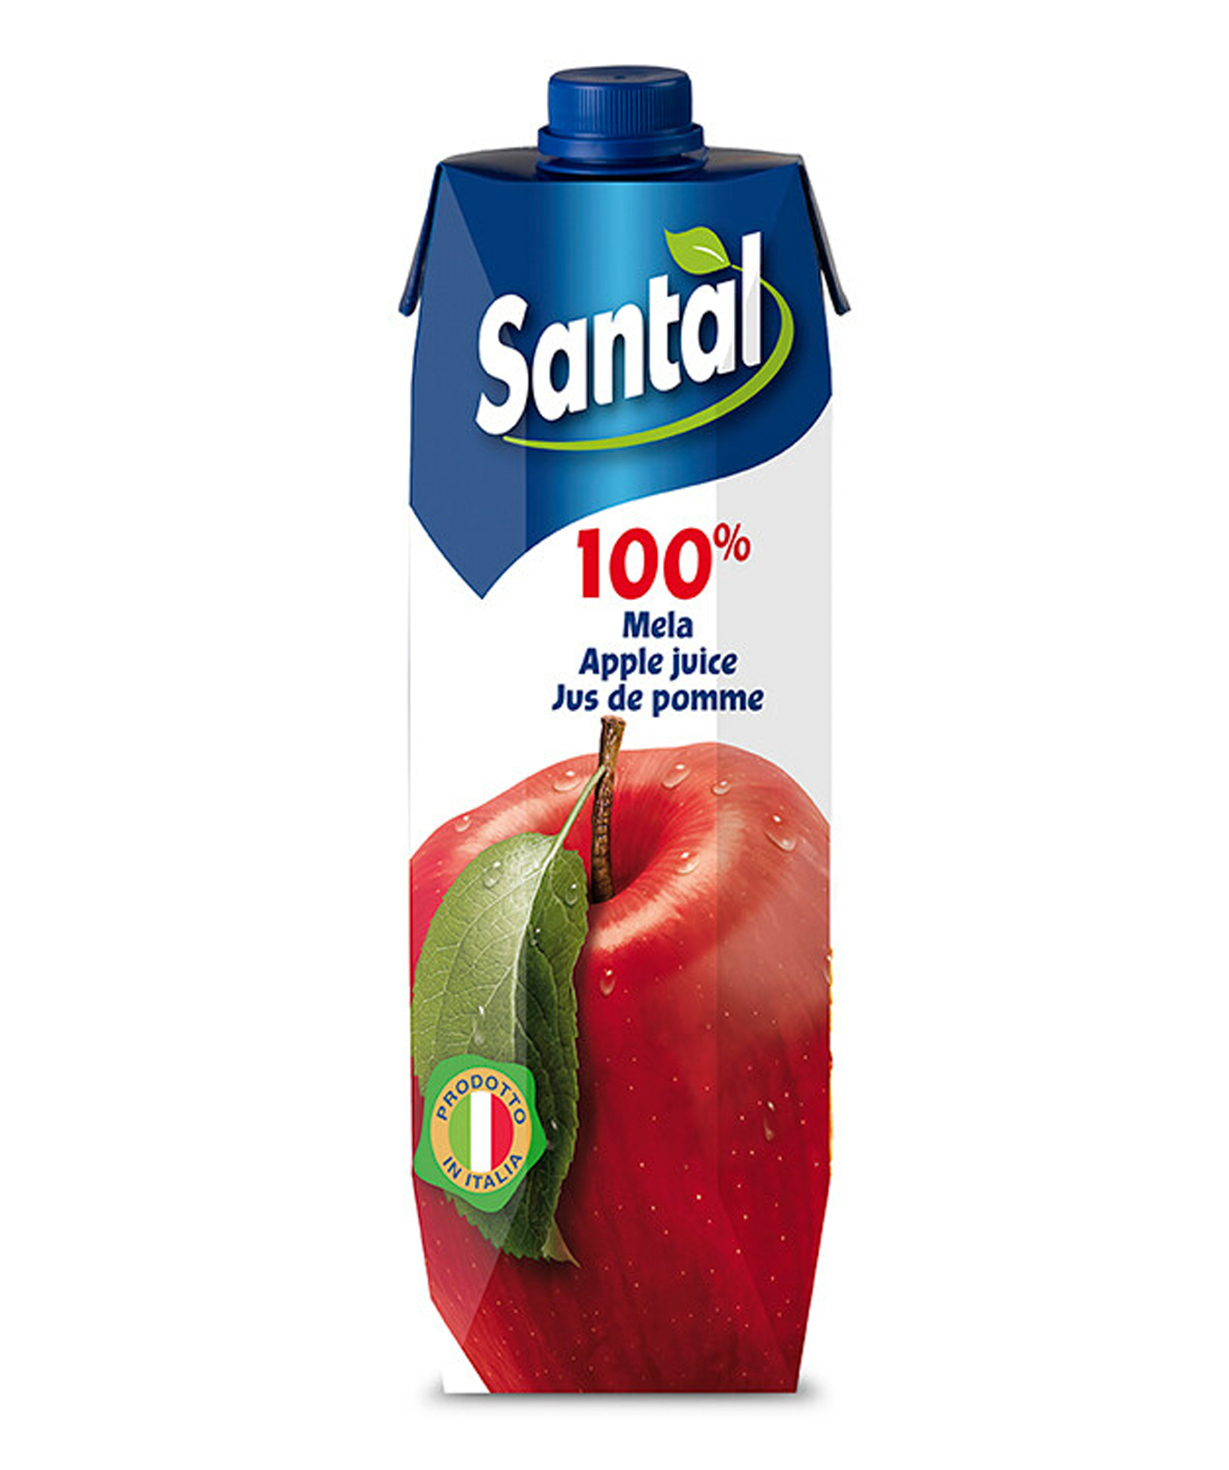 Հյութ «Santal» բնական, կարմիր խնձոր 1լ